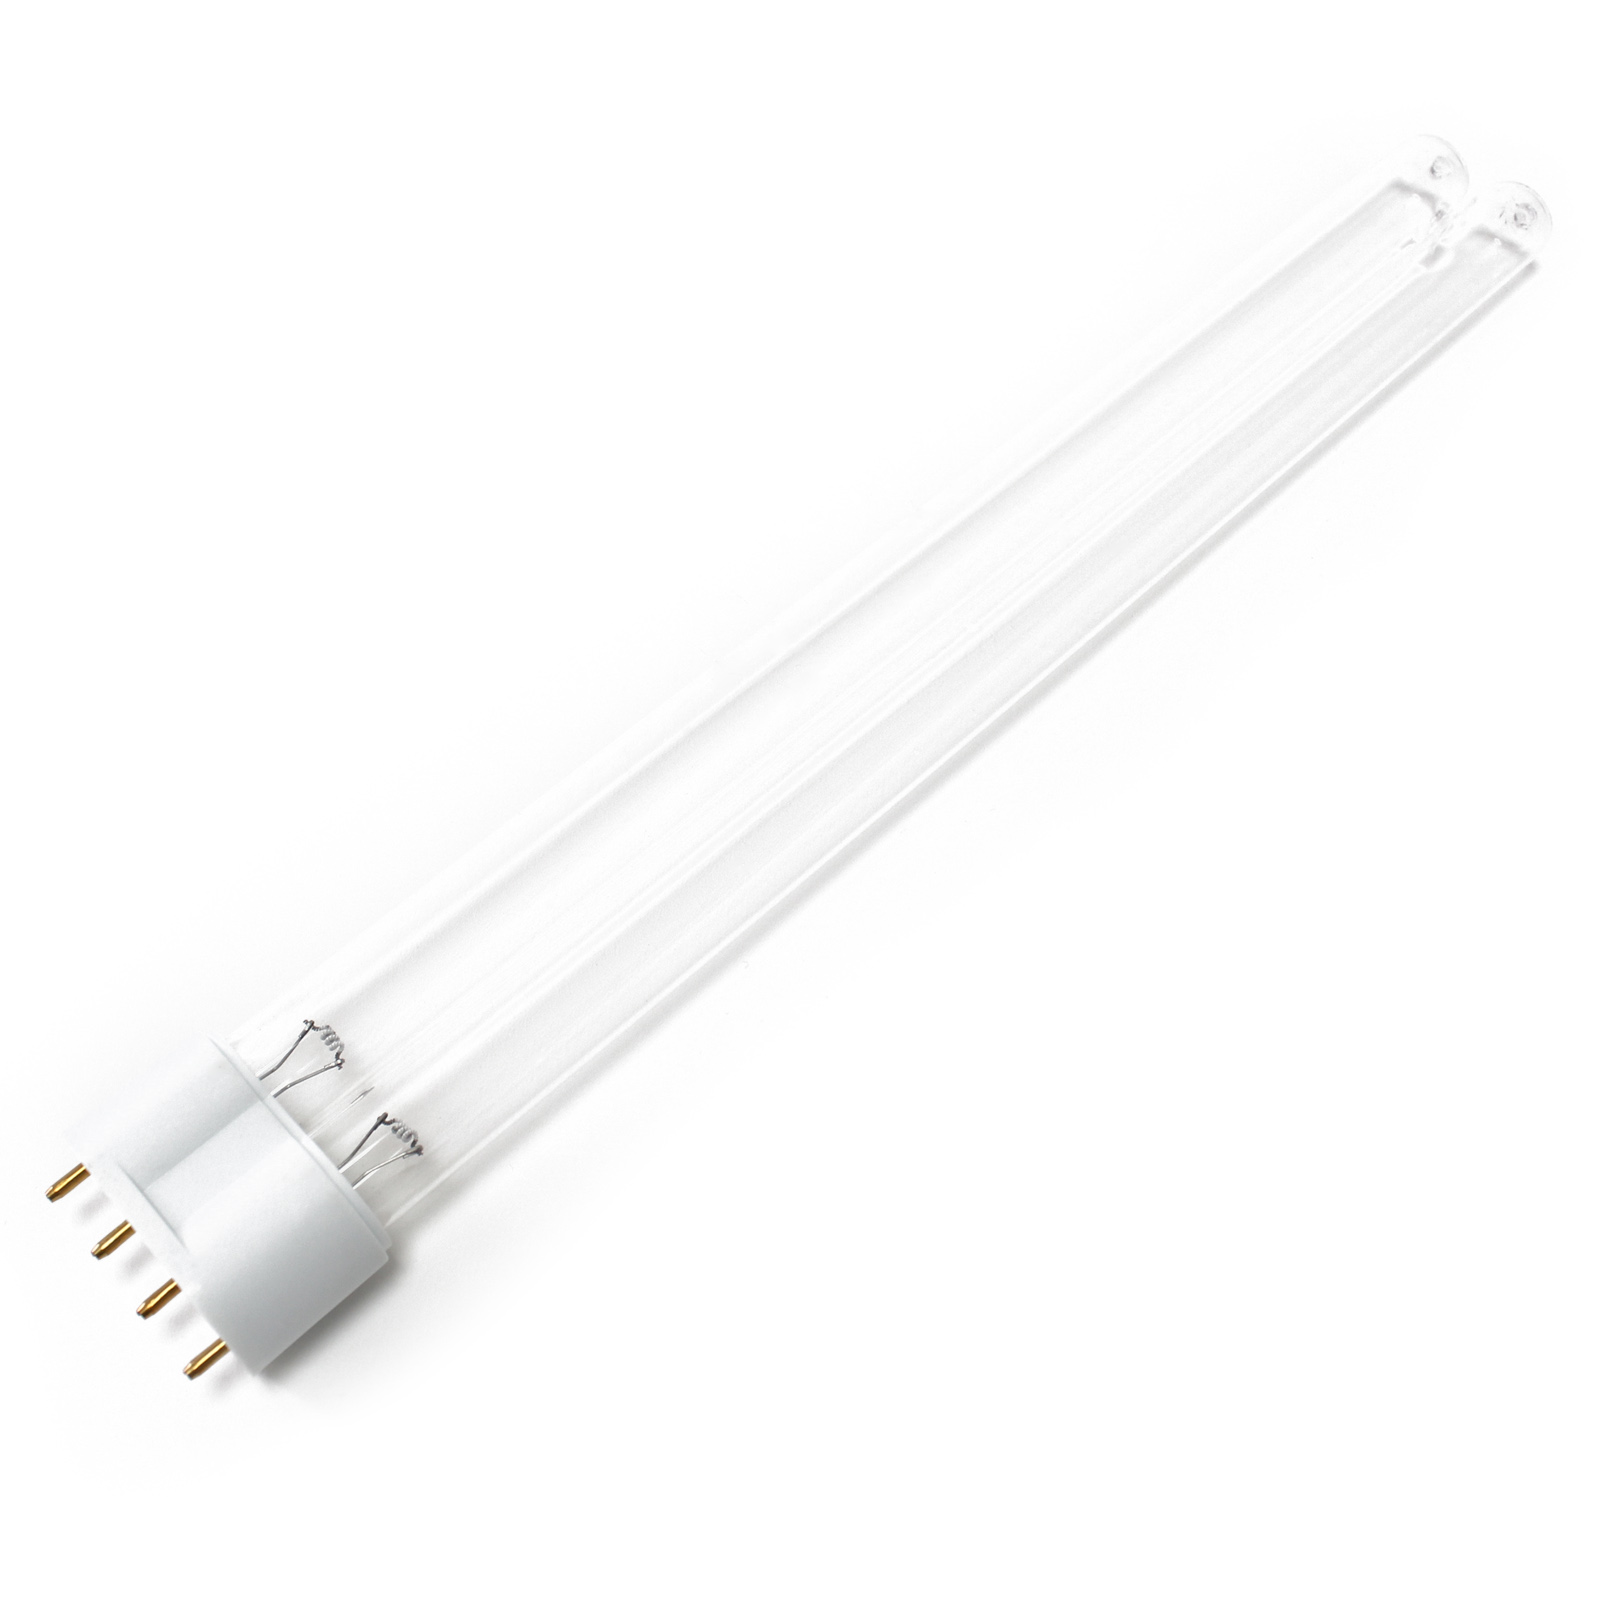 CUV-618 UV-C Lampe Röhre 18W Teich-Klärer UVC Leuchtmittel